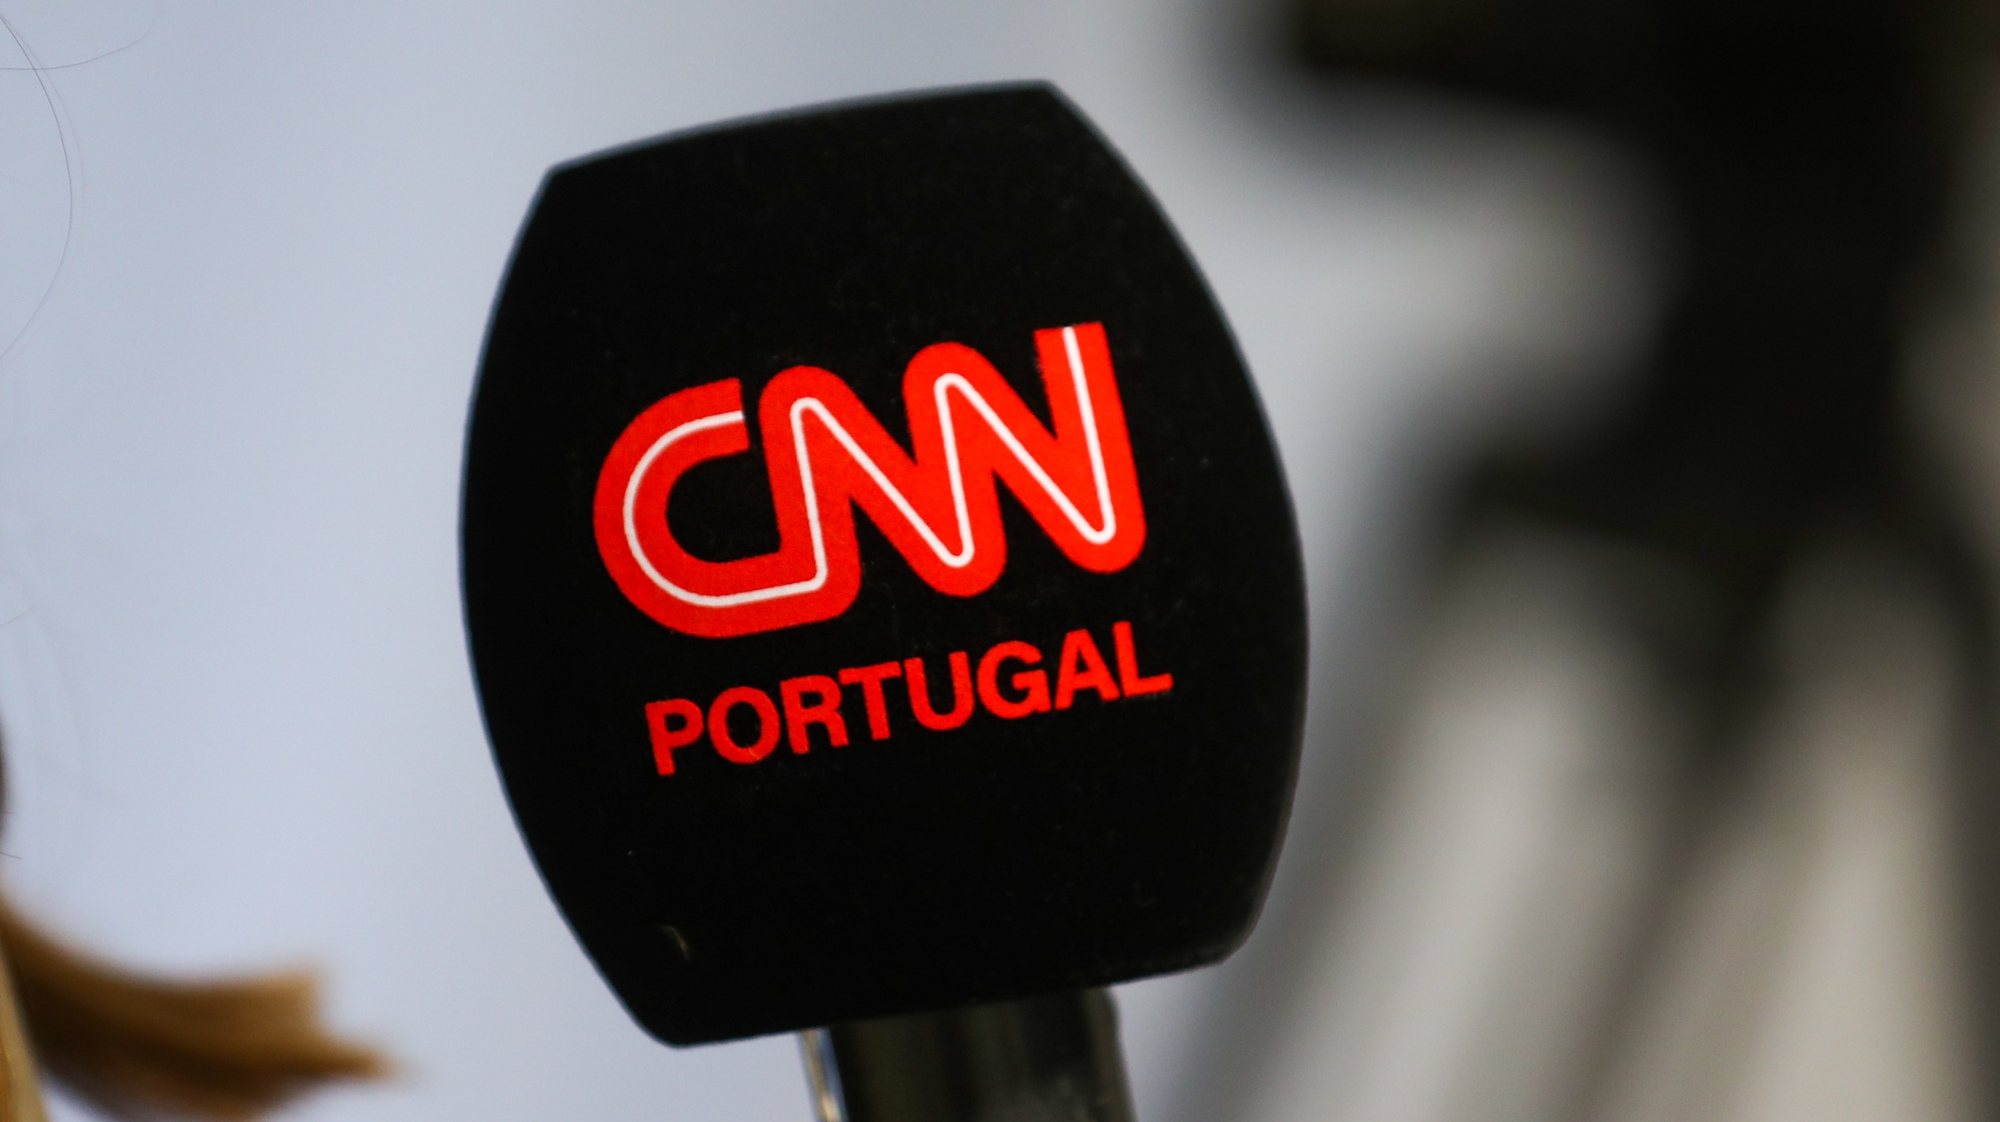 Microfone da CNN - Portugal, Lisboa, 03 de dezembro de 2021. ANTÓNIO COTRIM/LUSA